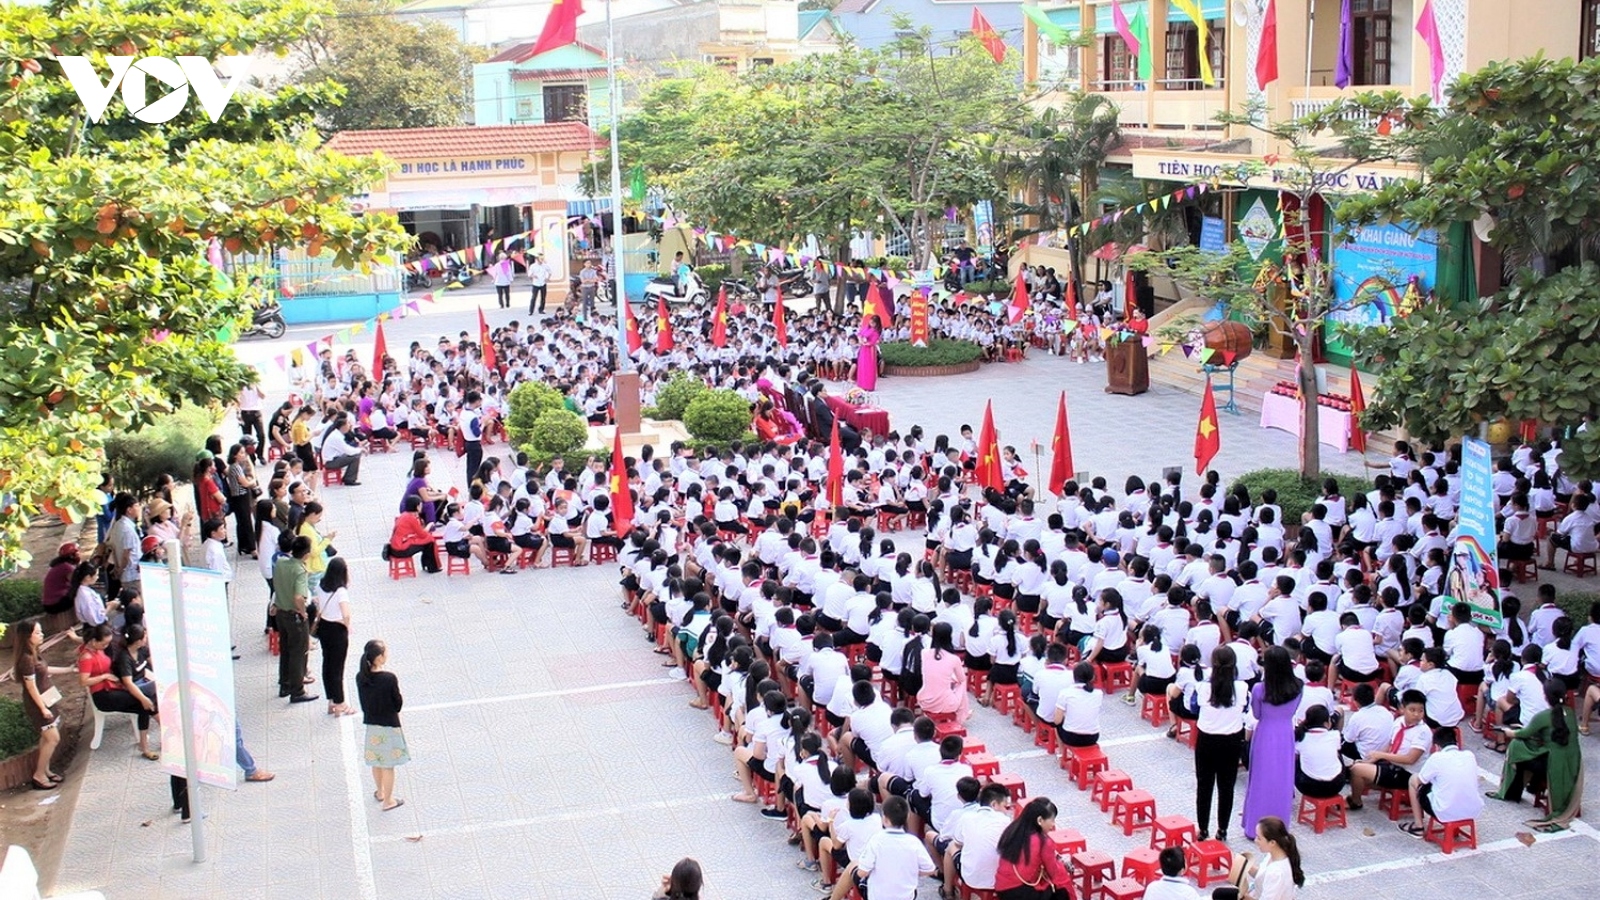 Quảng Bình tiếp tục miễn học phí cho học sinh